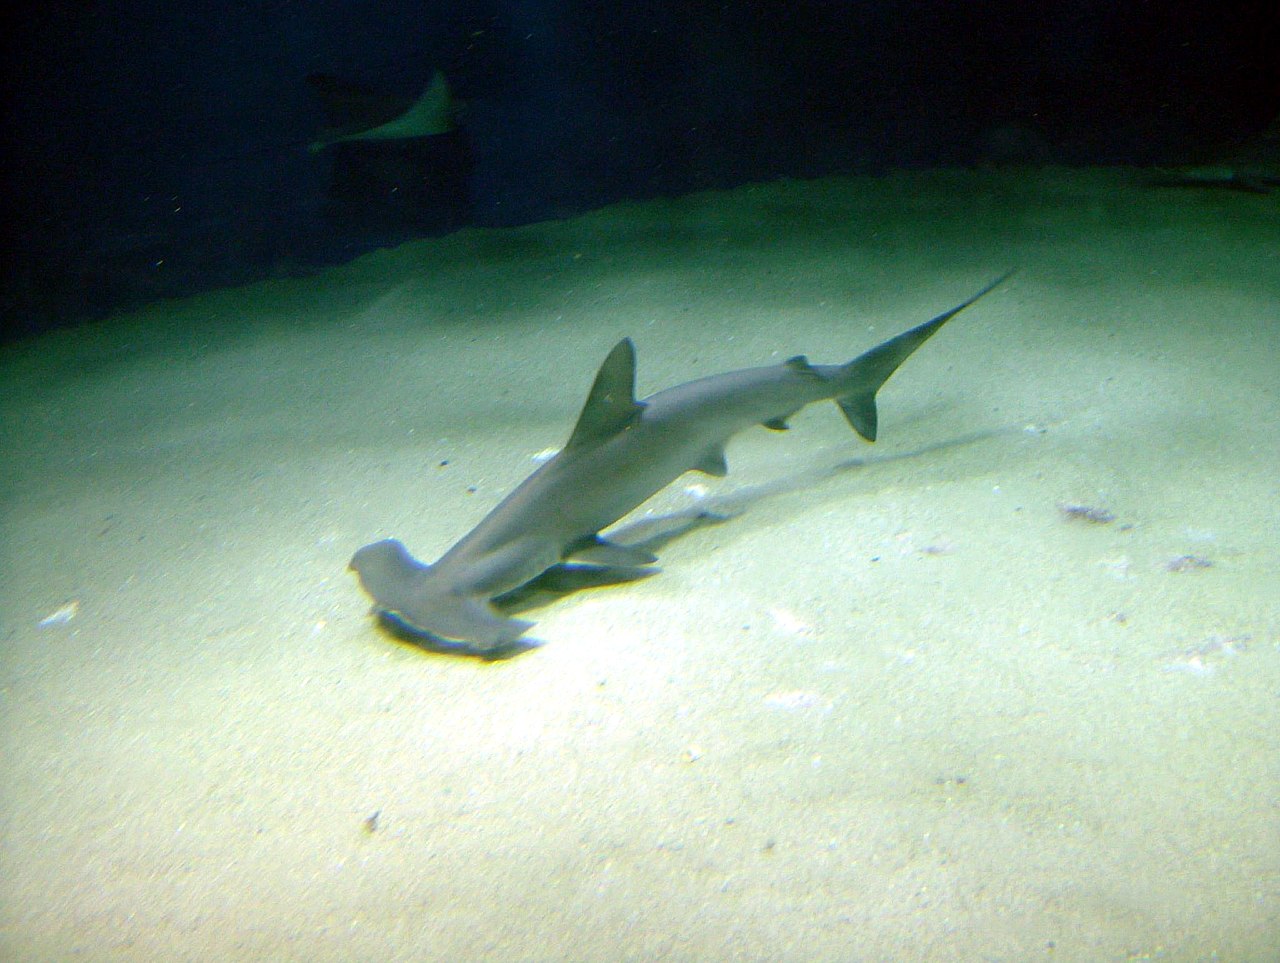 requins-marteaux